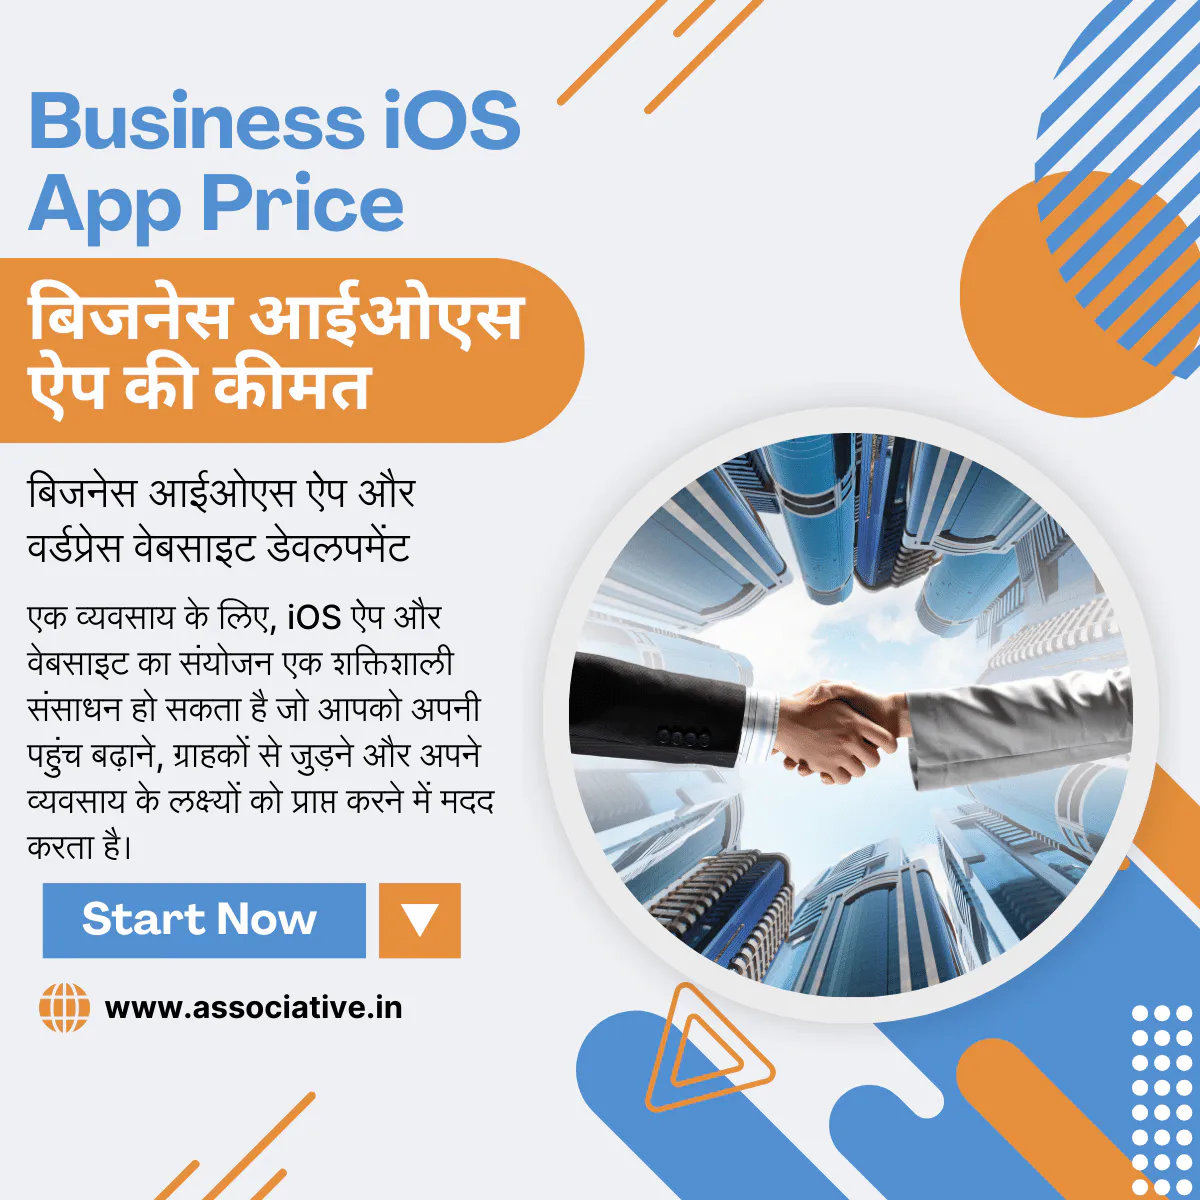 Business iOS App